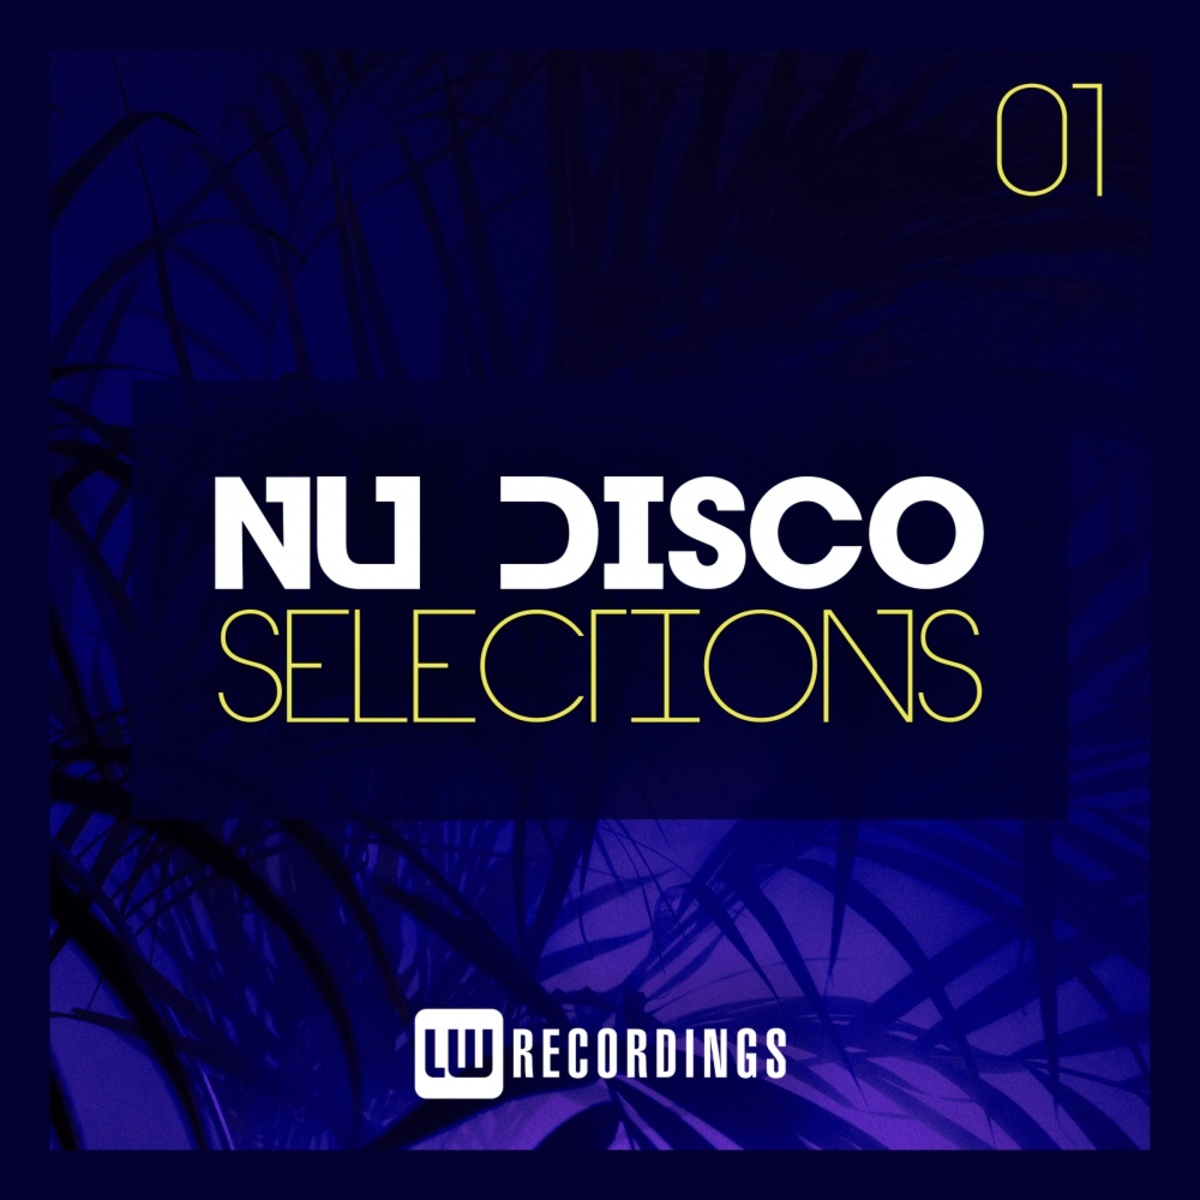 VA - Nu-Disco Selections, Vol. 01 / LW Recordings